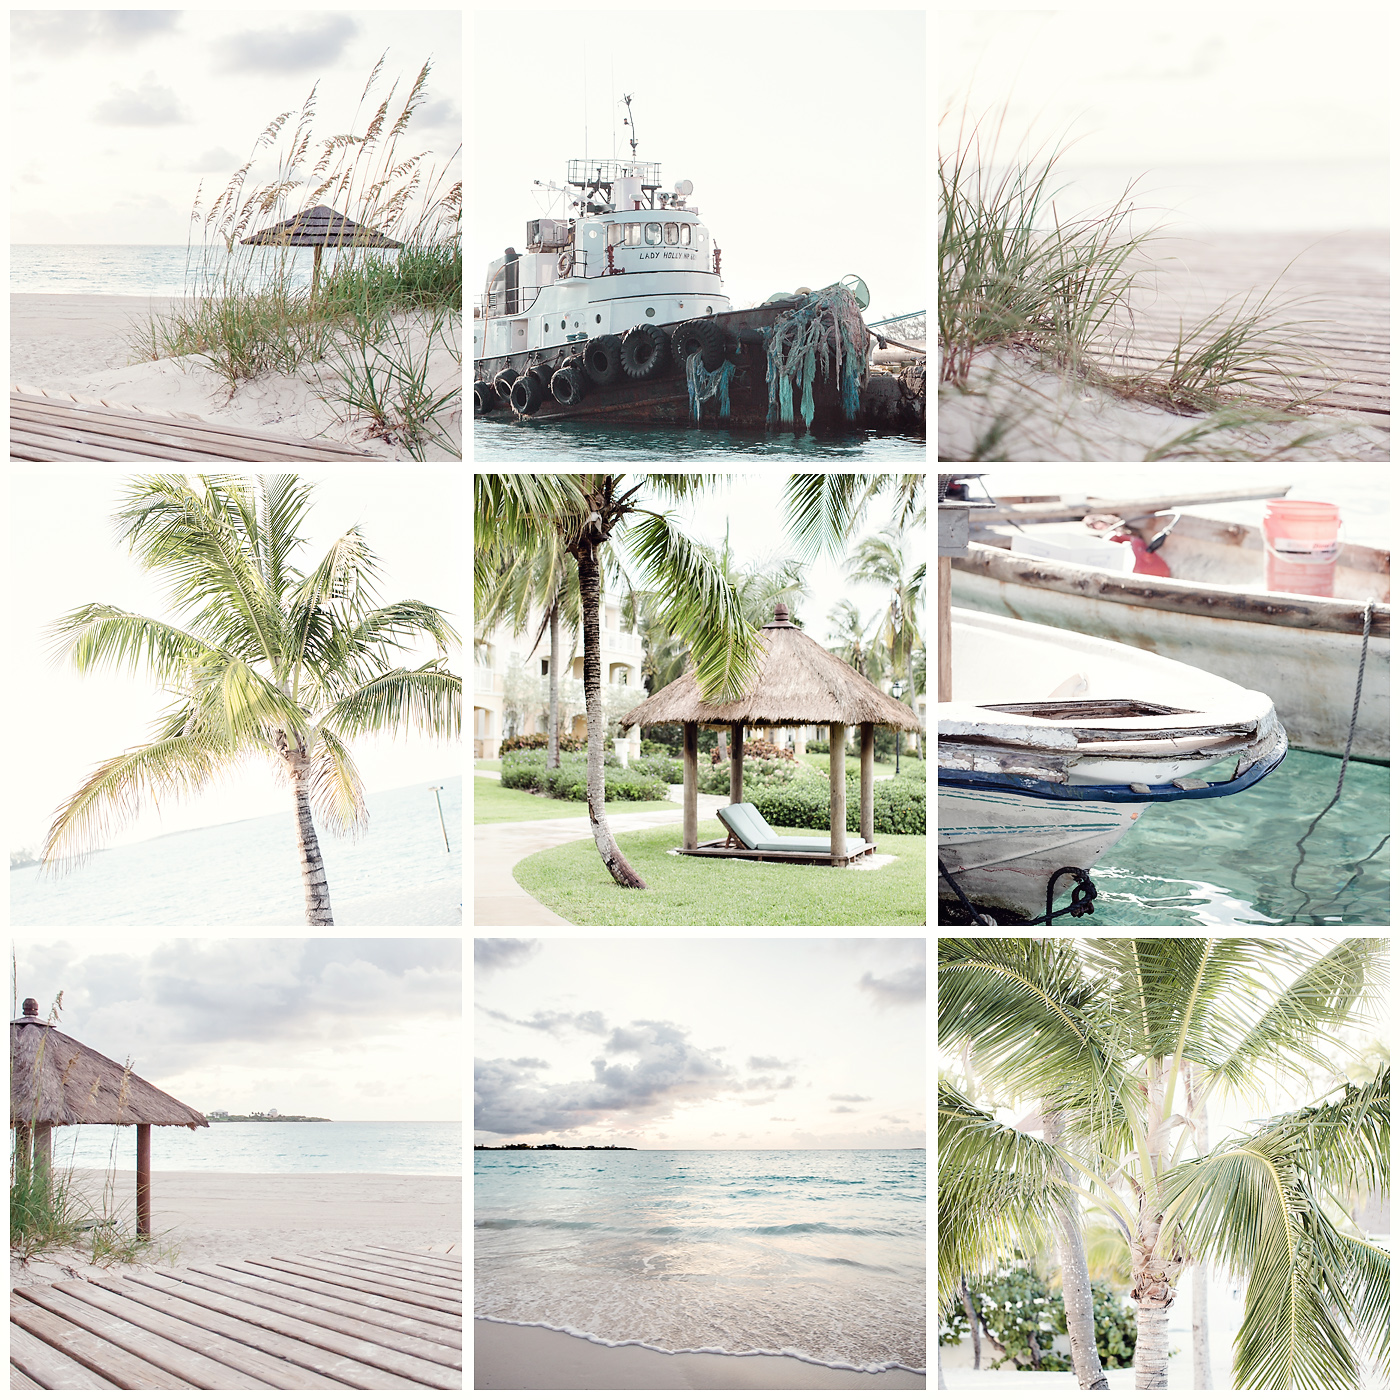 bahamas, the elle in love, exuma, palm tree, sand, beach, vacation, serene